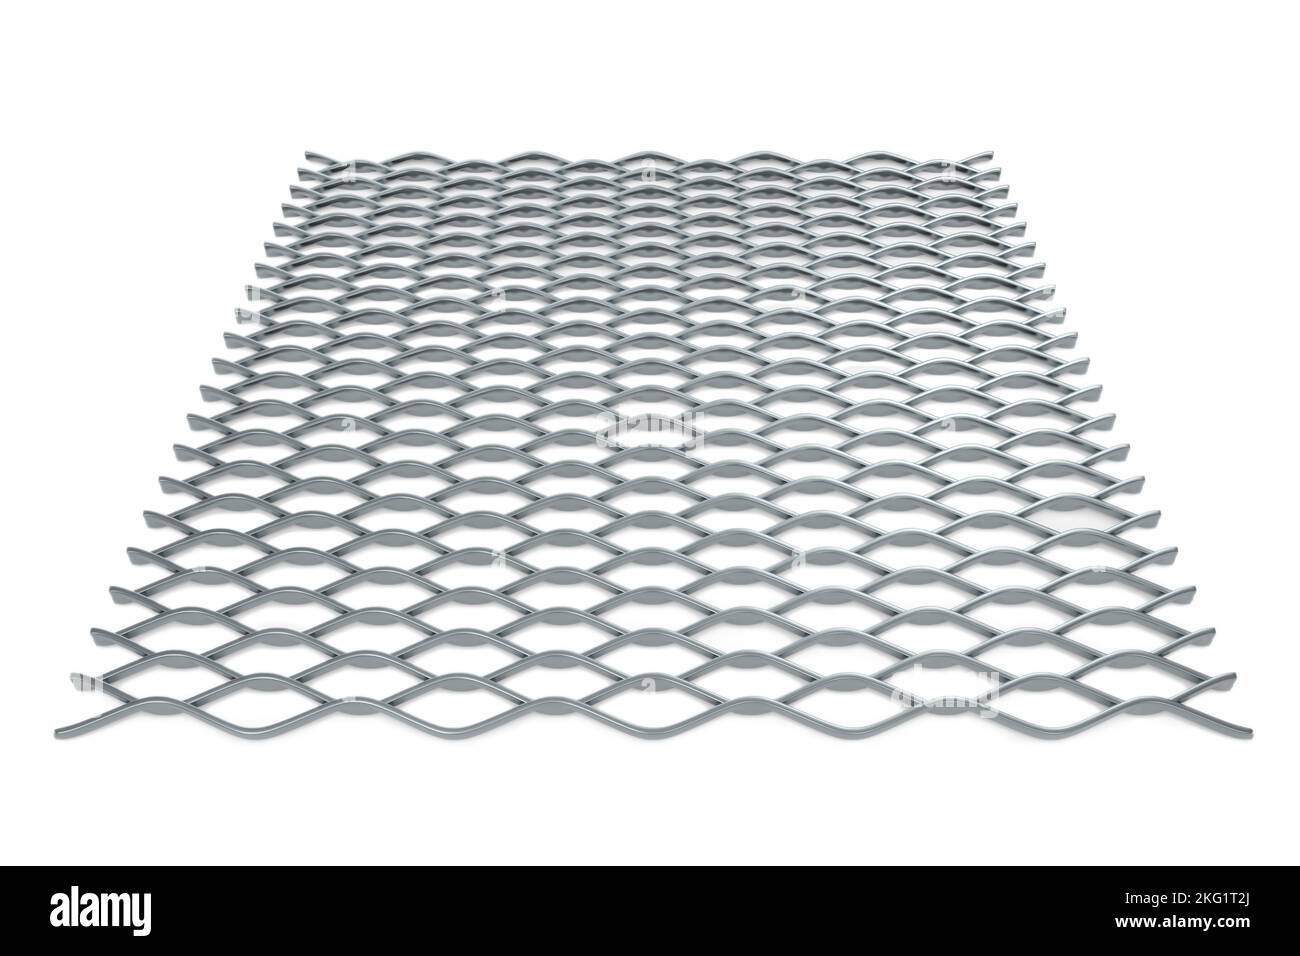 Vue de dessus de la grille métallique standard (surélevée) étendue - rendu 3D Banque D'Images